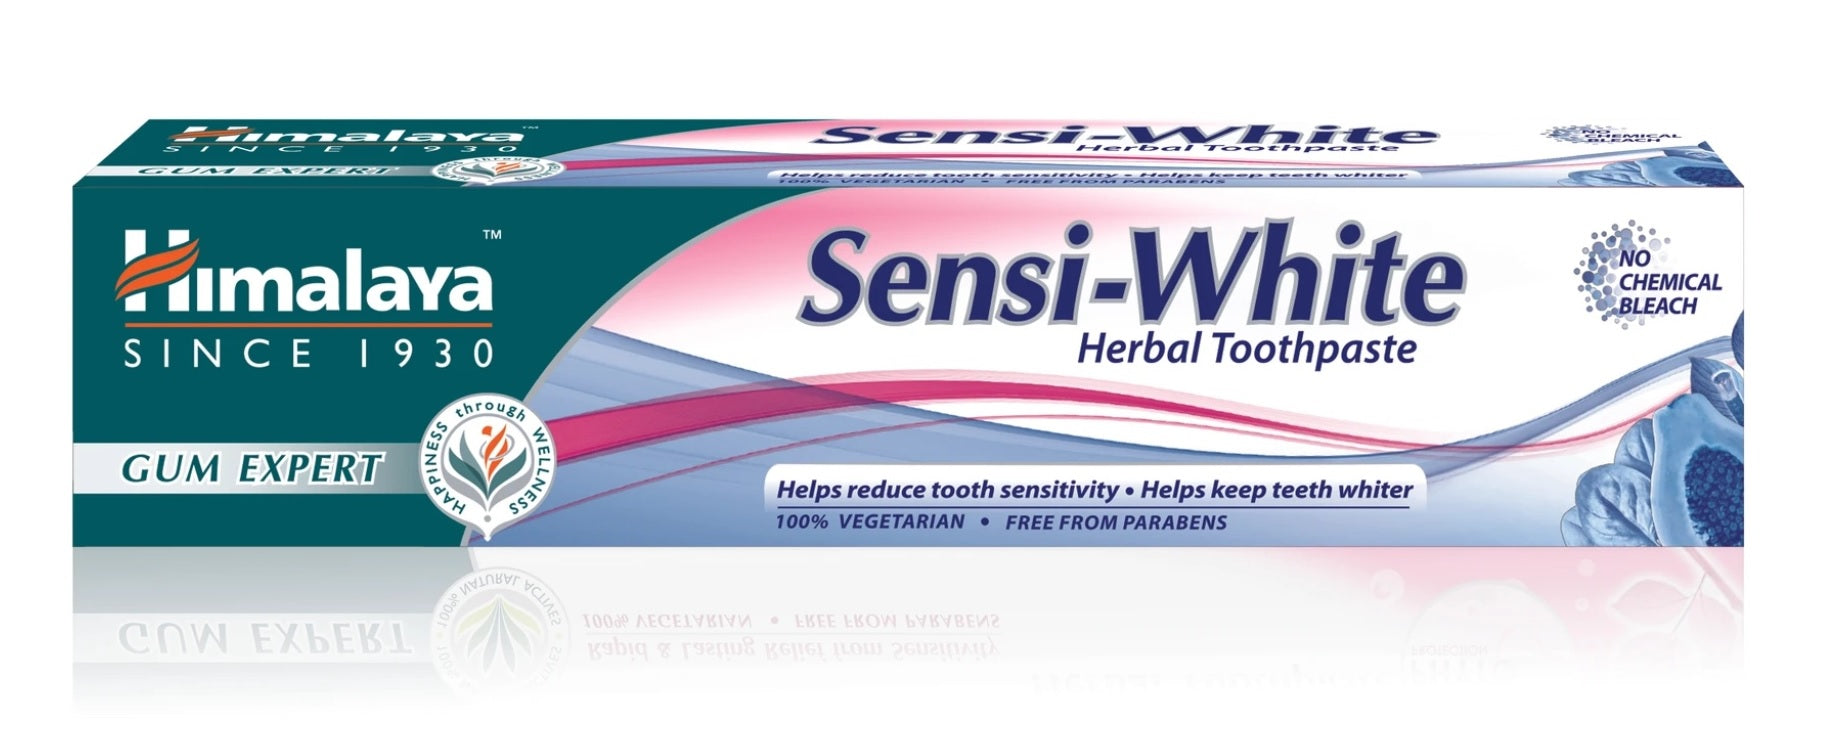 Himalaya Sensi-White Herbal Toothpaste 100g